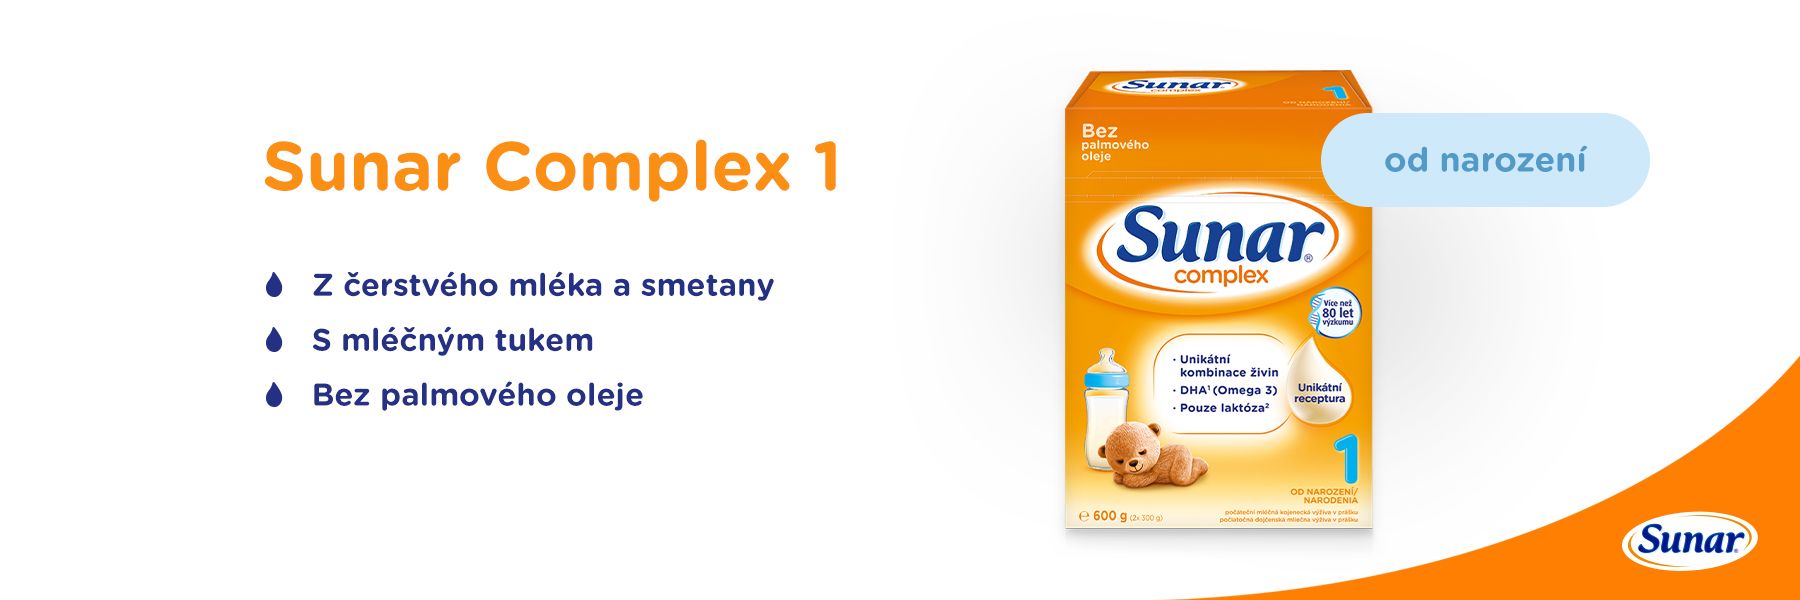 Sunar Complex 1, počáteční kojenecké mléko, 6x600g